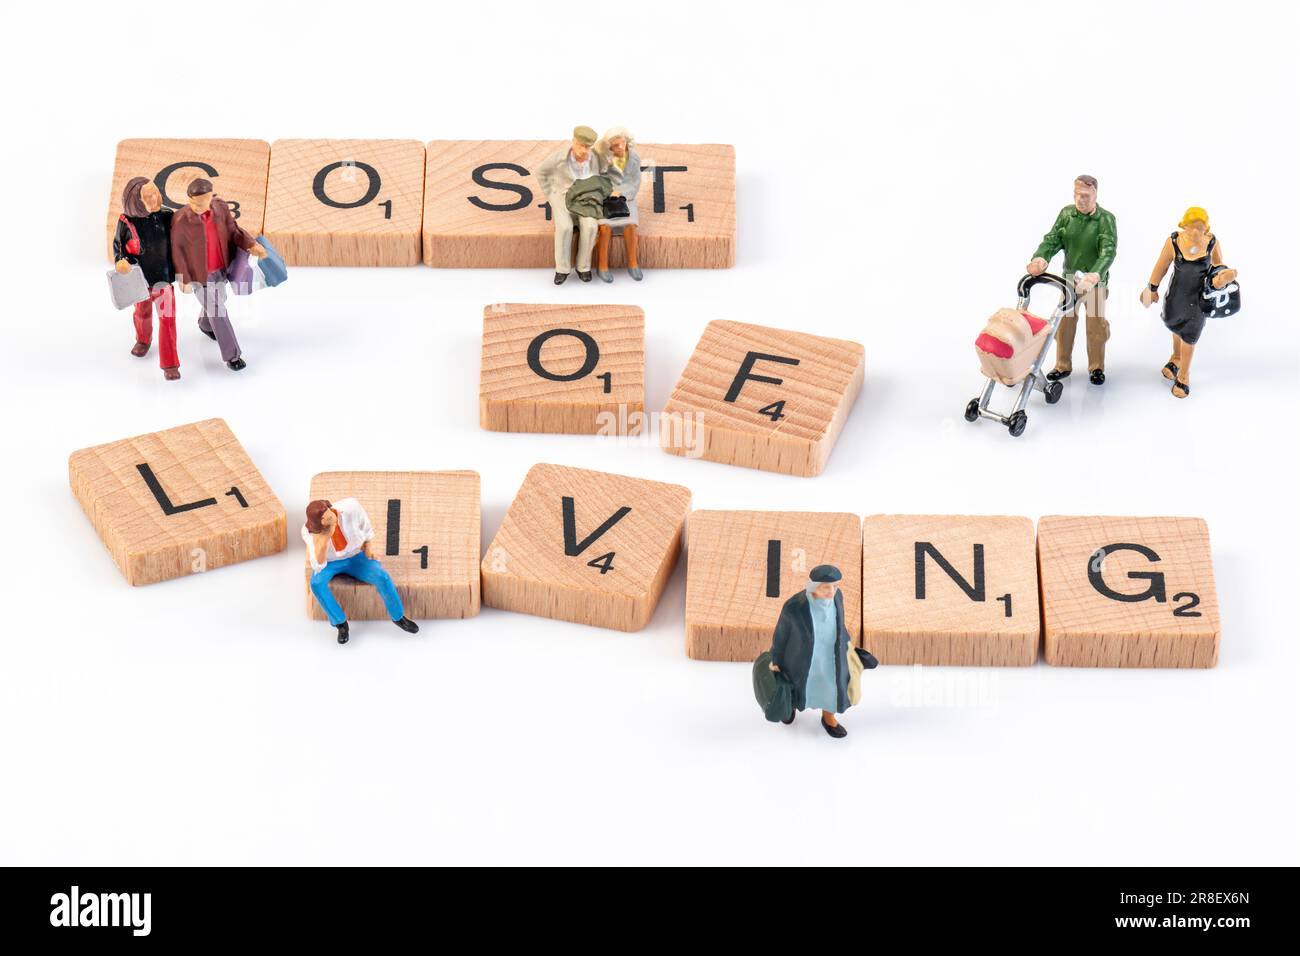 Lebenshaltungskosten - Scrabble-Buchstaben aus Holz, die "Lebenshaltungskosten" buchstabieren, umgeben von kleinen Figuren, die verschiedene Altersgruppen darstellen. Stockfoto